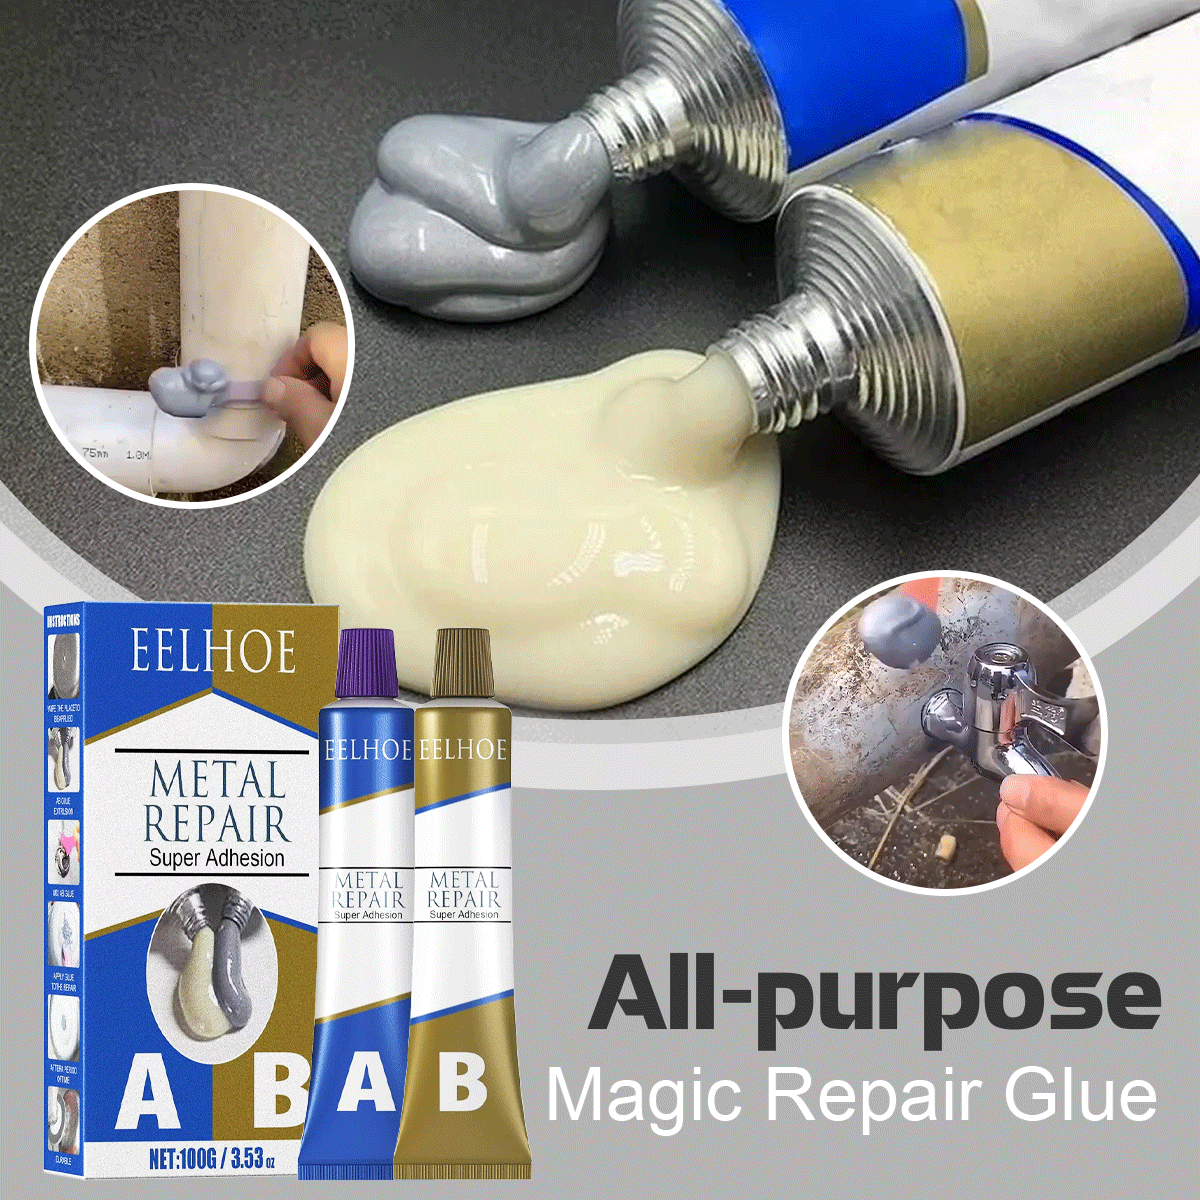 All-purpose Magic Repair Glue FAEVEZ™- Home Devices